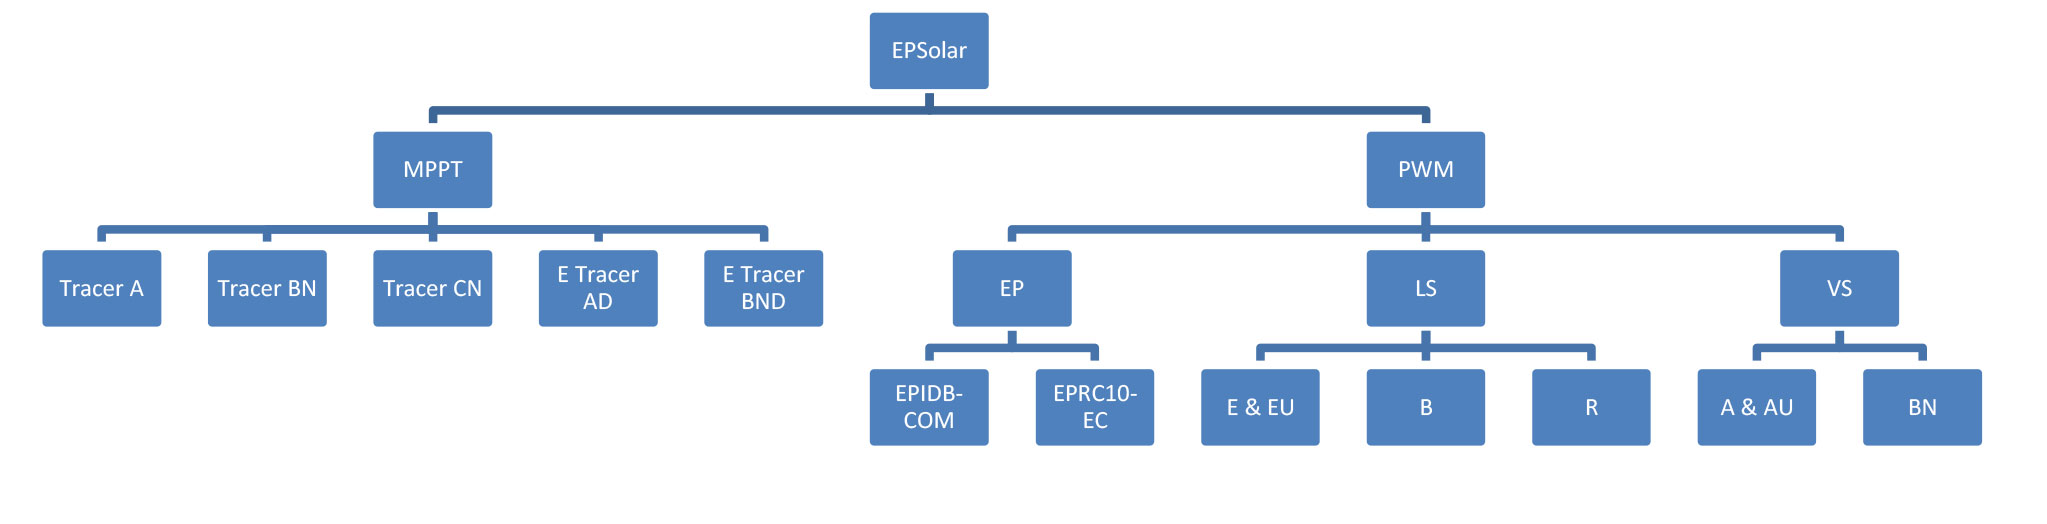 معرفی شارژکنترلرهای MPPT شرکت EPsolar